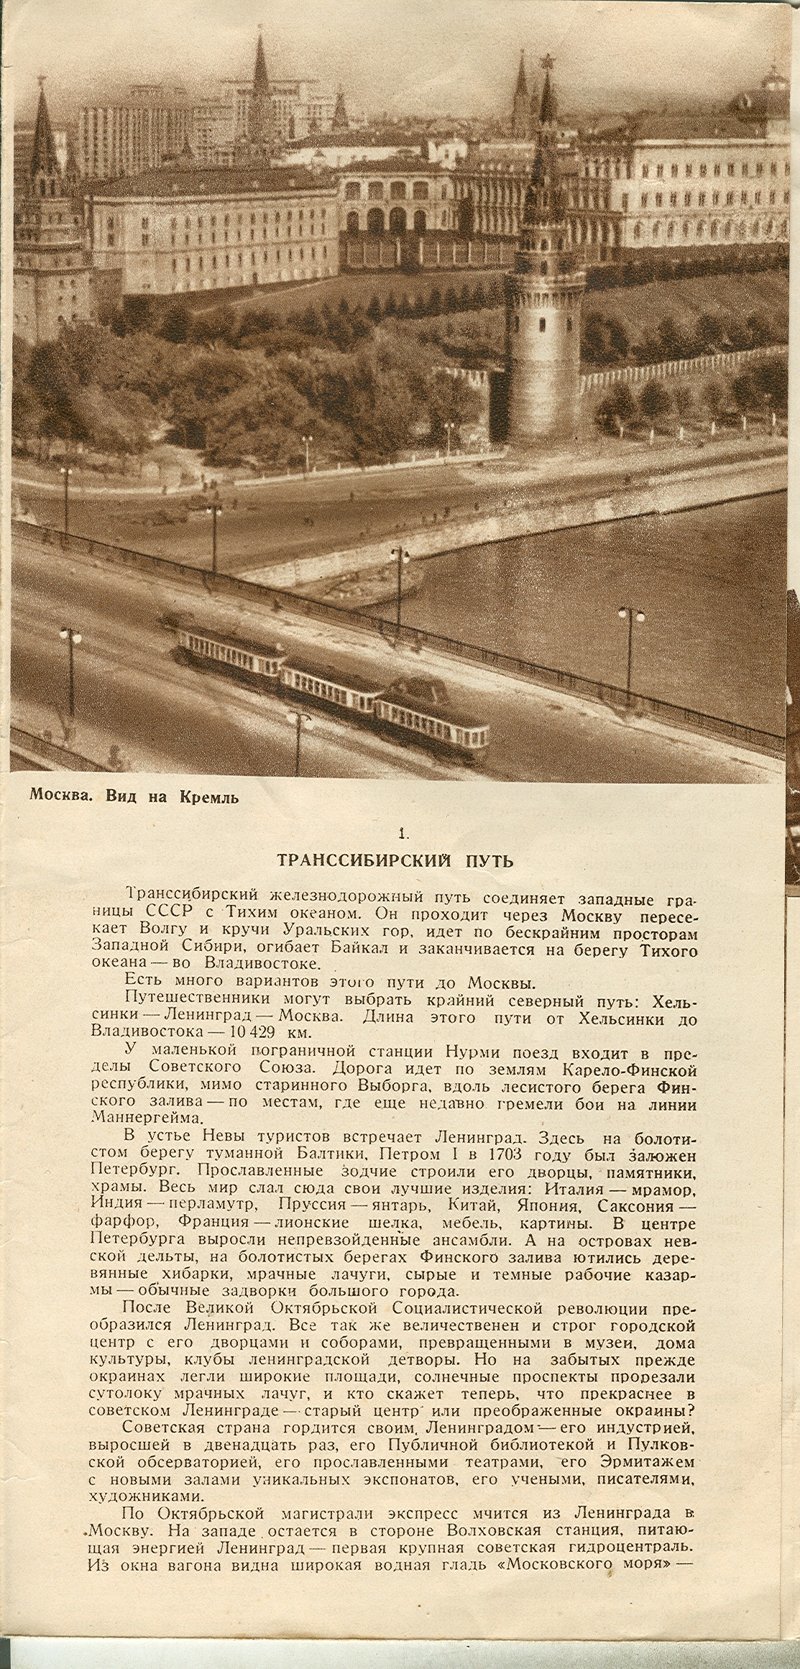 1941. Транссибирский экспресс